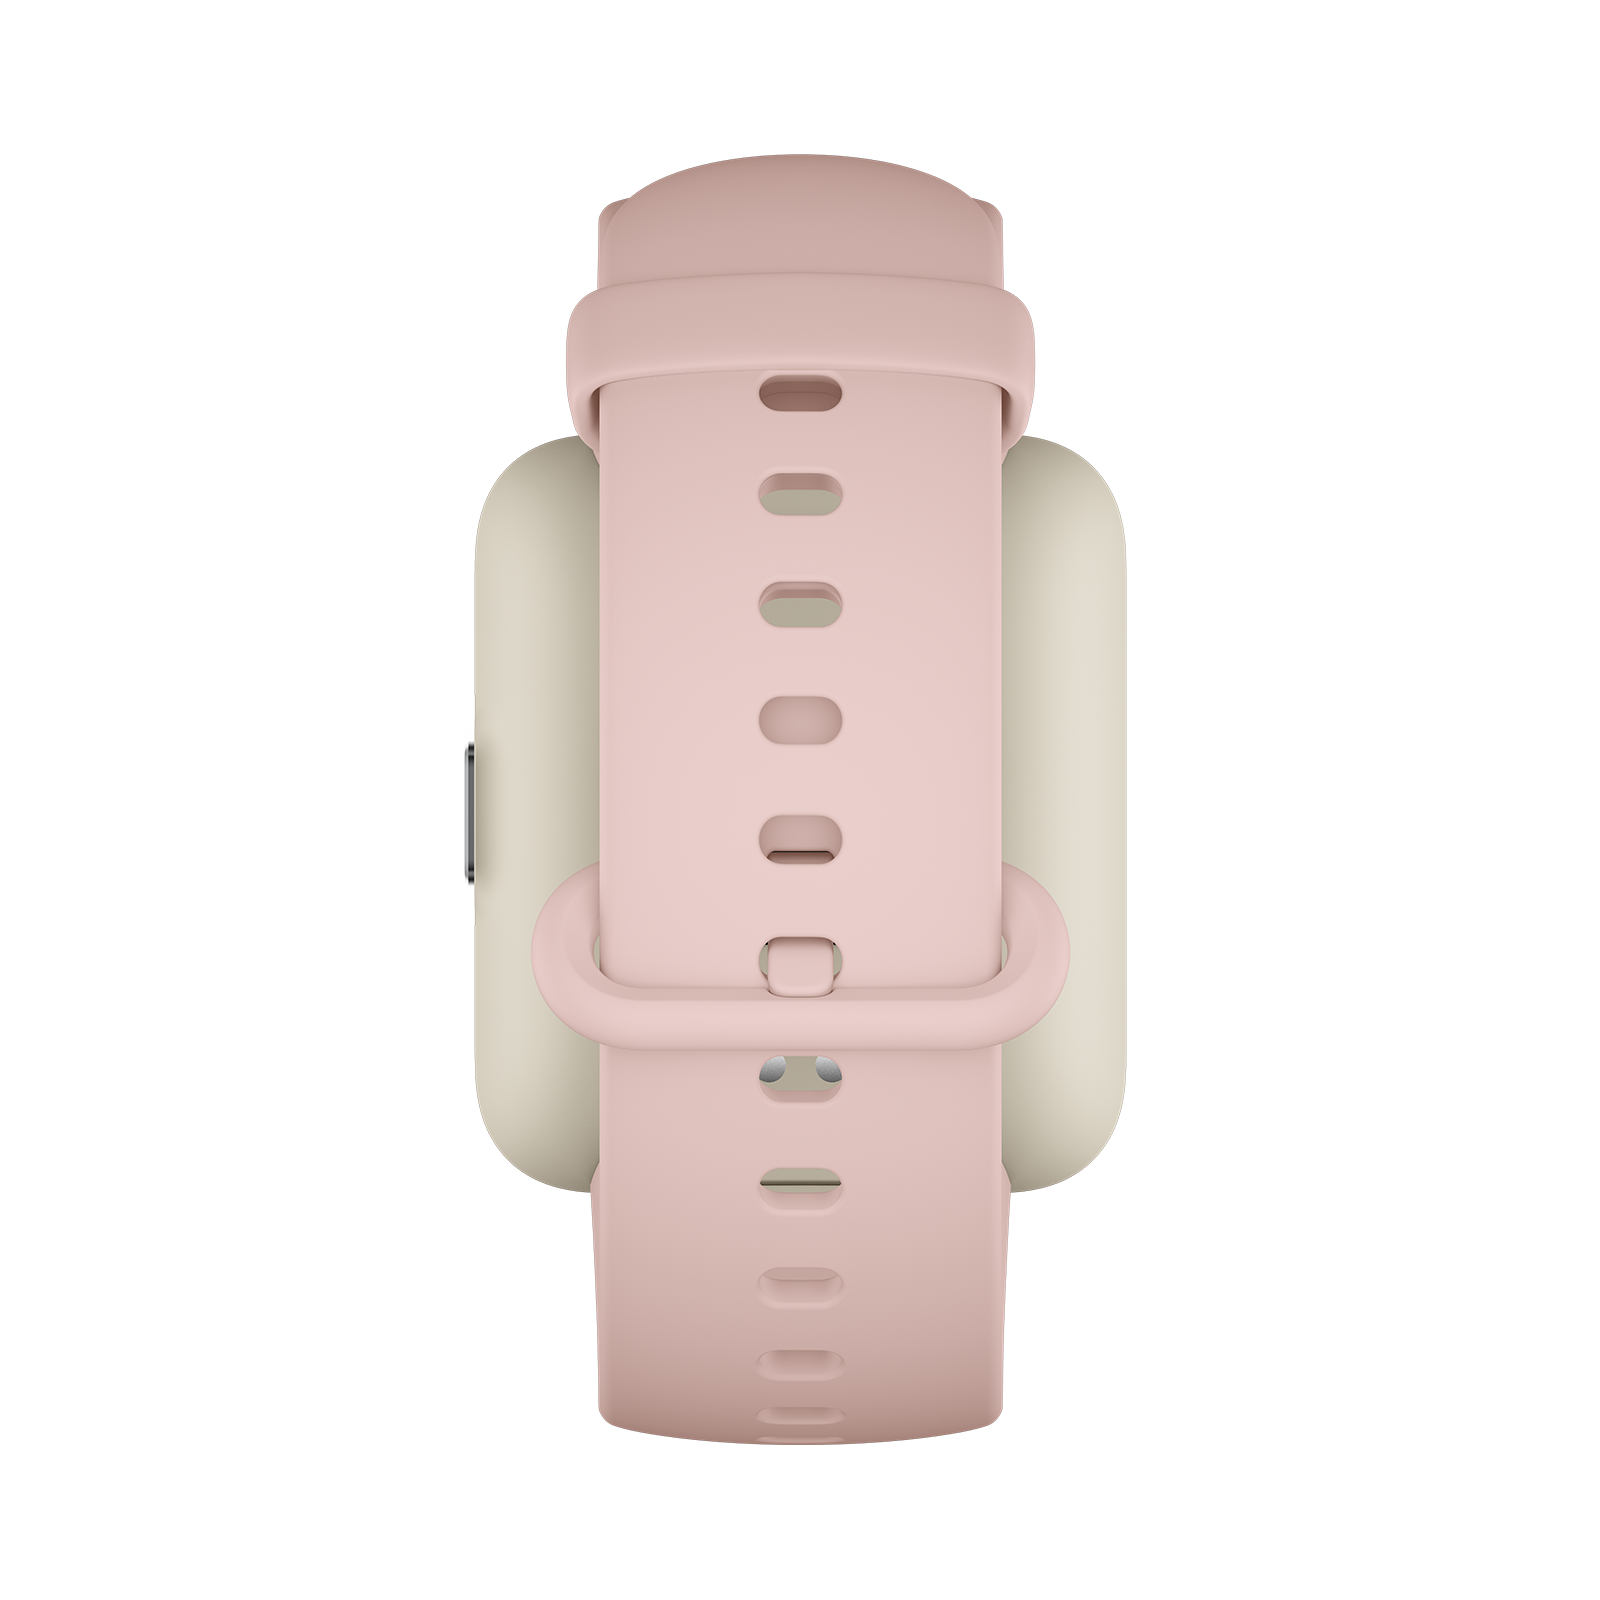 Redmi Watch 2 Lite Strap Pink